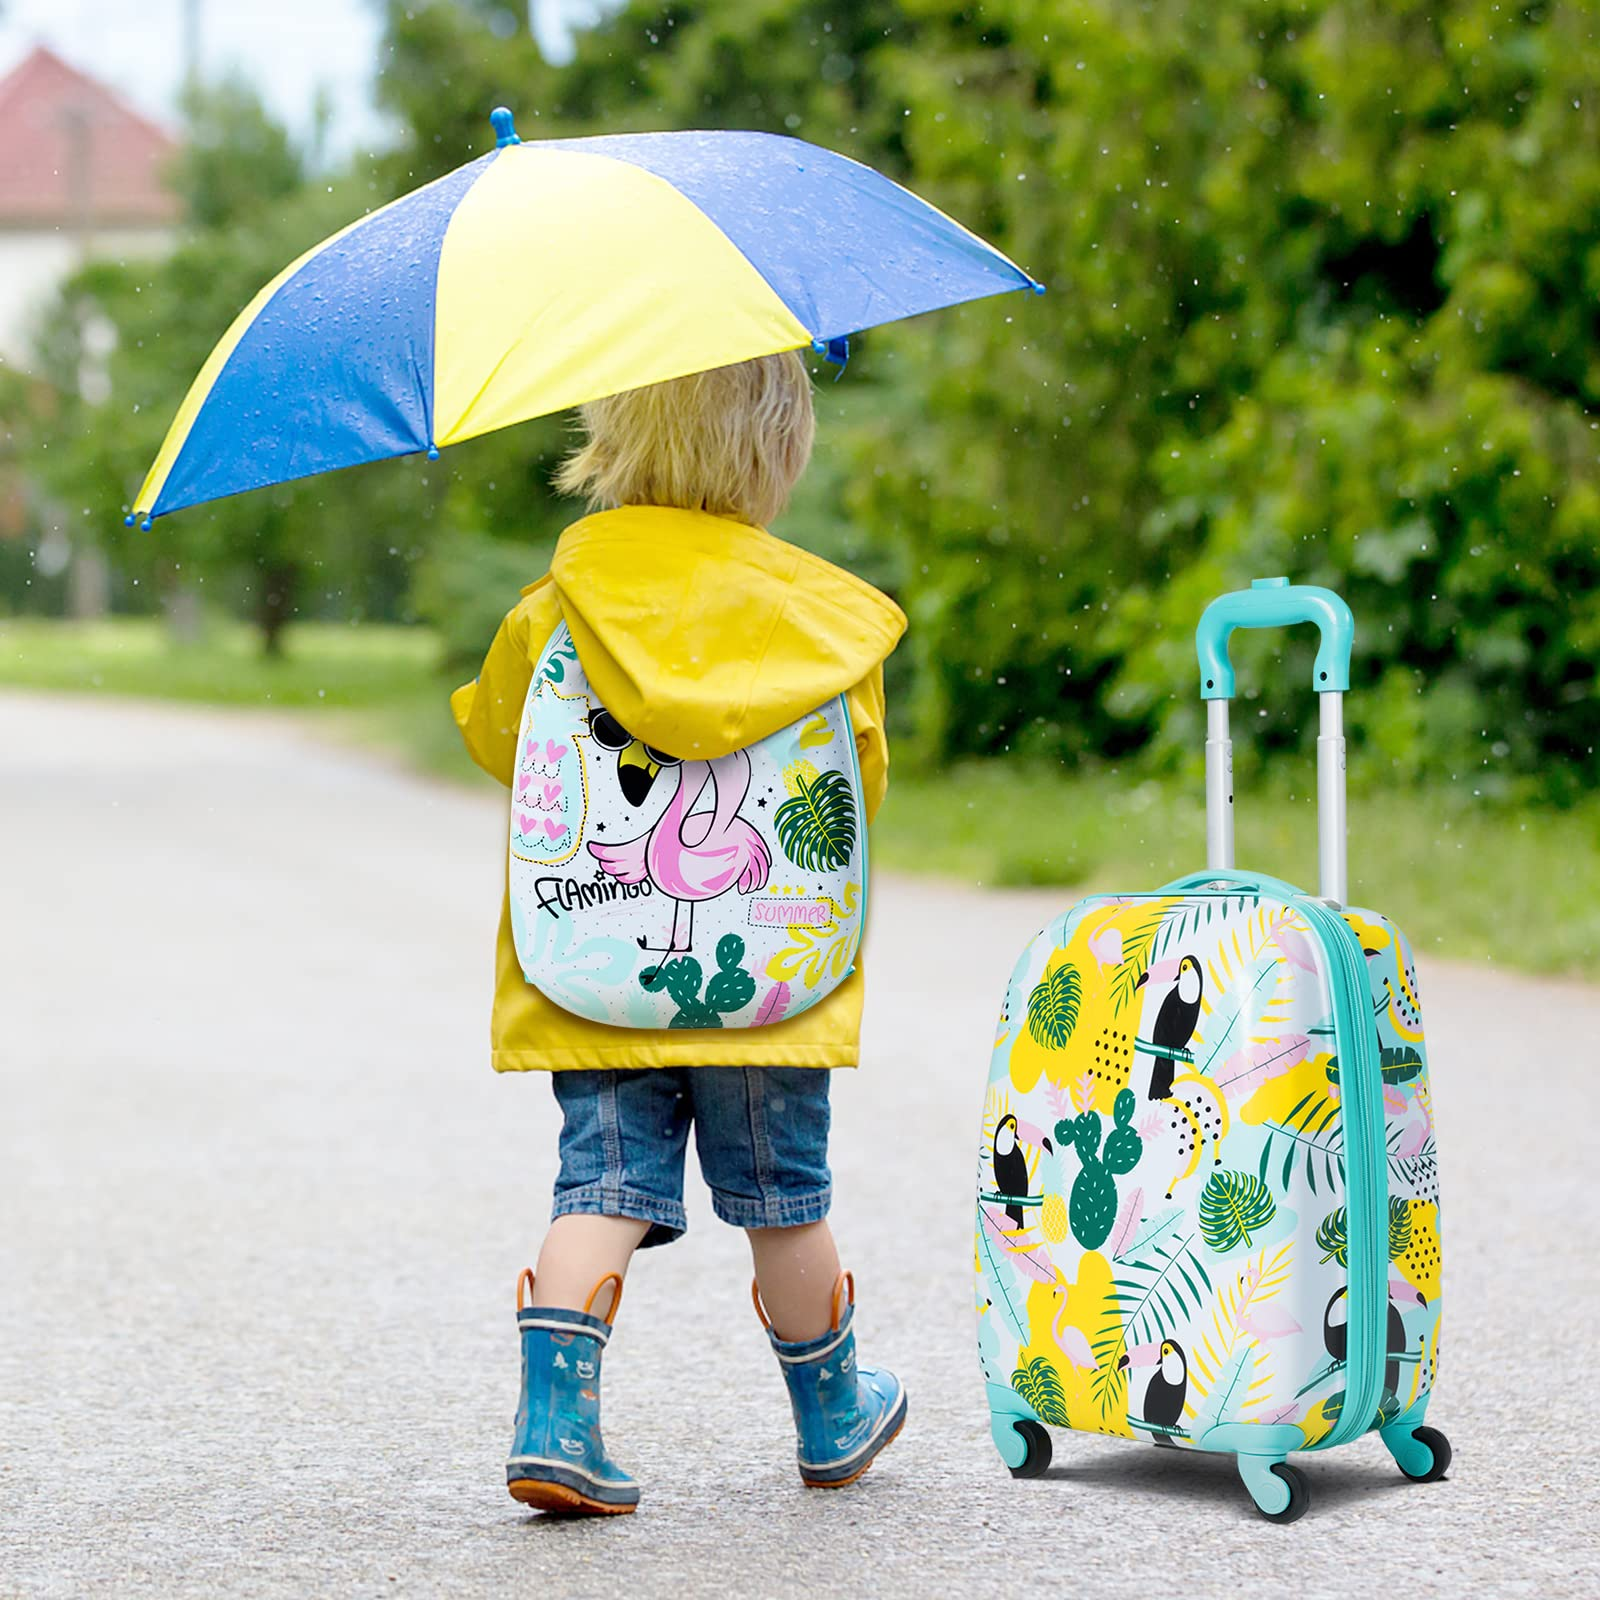 Baby Joy 2 PC Kids Luggage, 16 Toddlers Carry-On Suitcase & 12 Backpack Set, Elephant